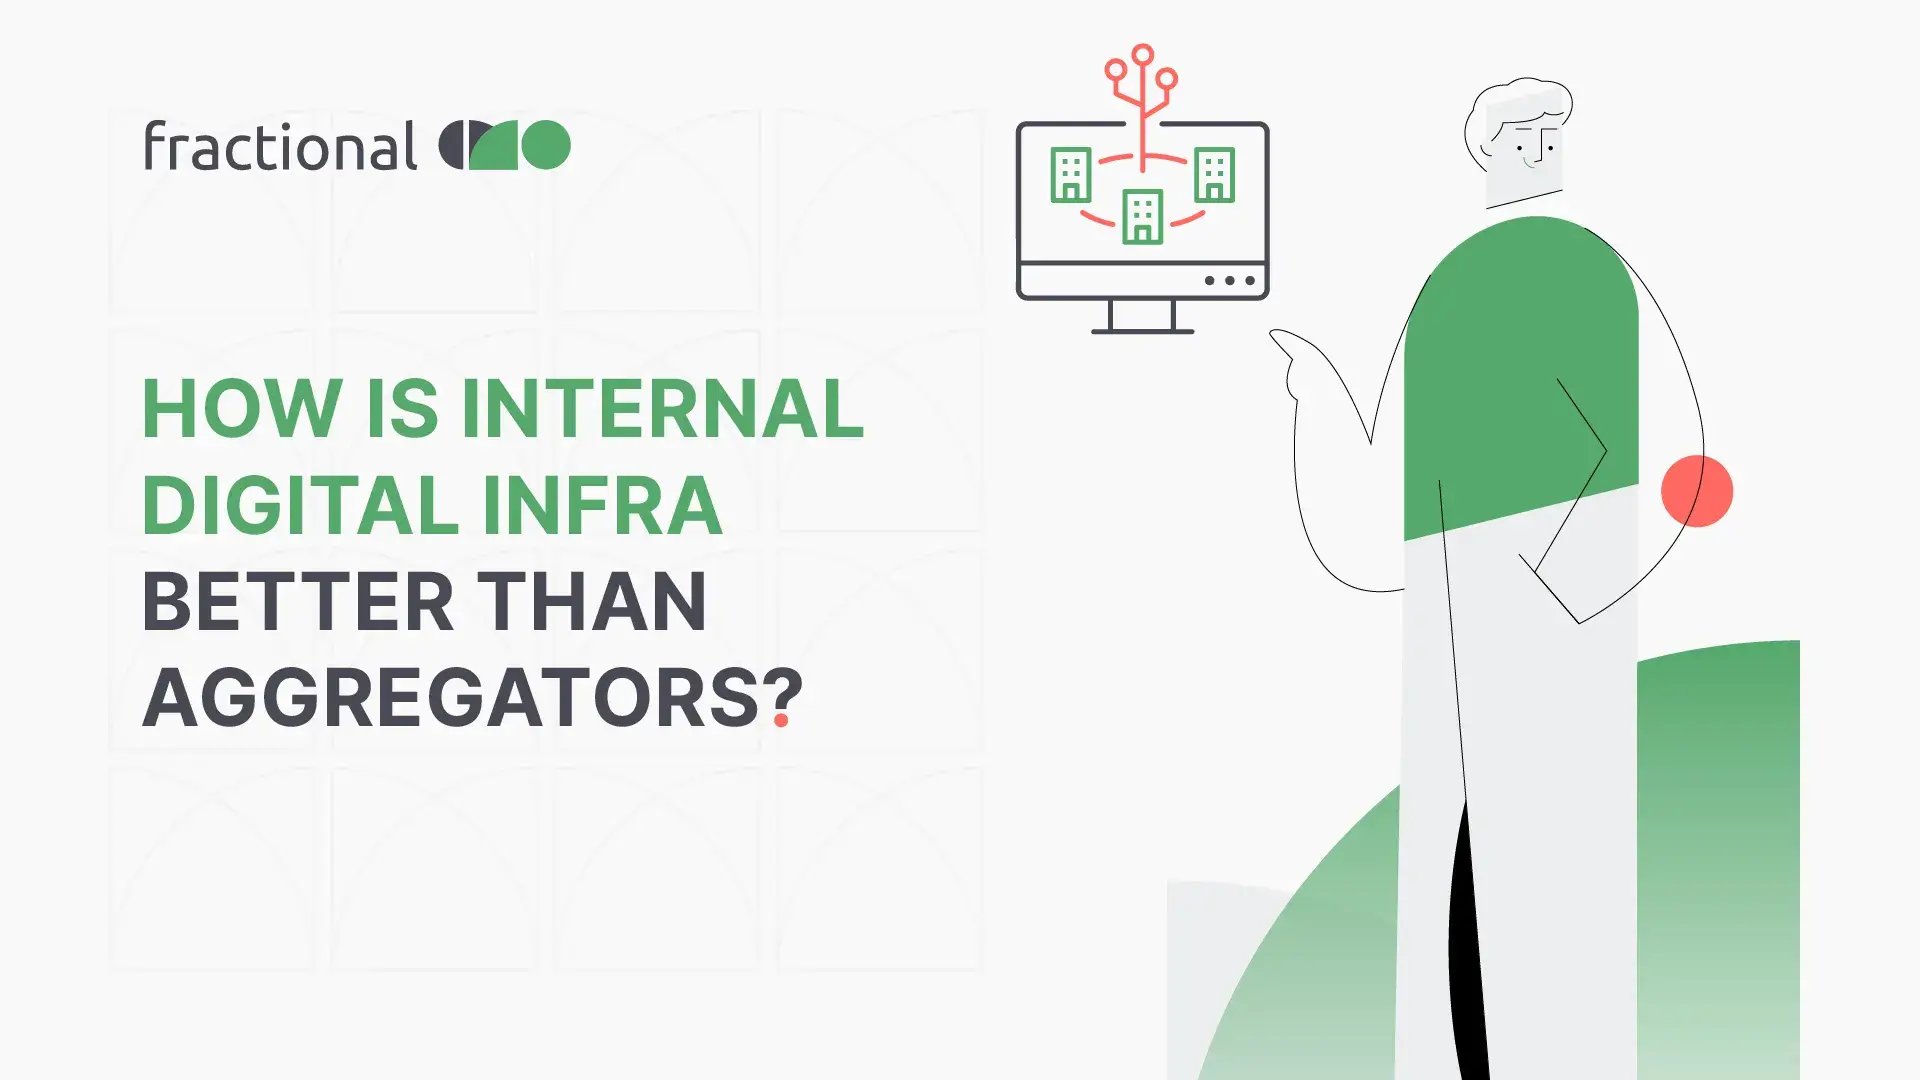 How Is Internal Digital Infra Better - Blog Image